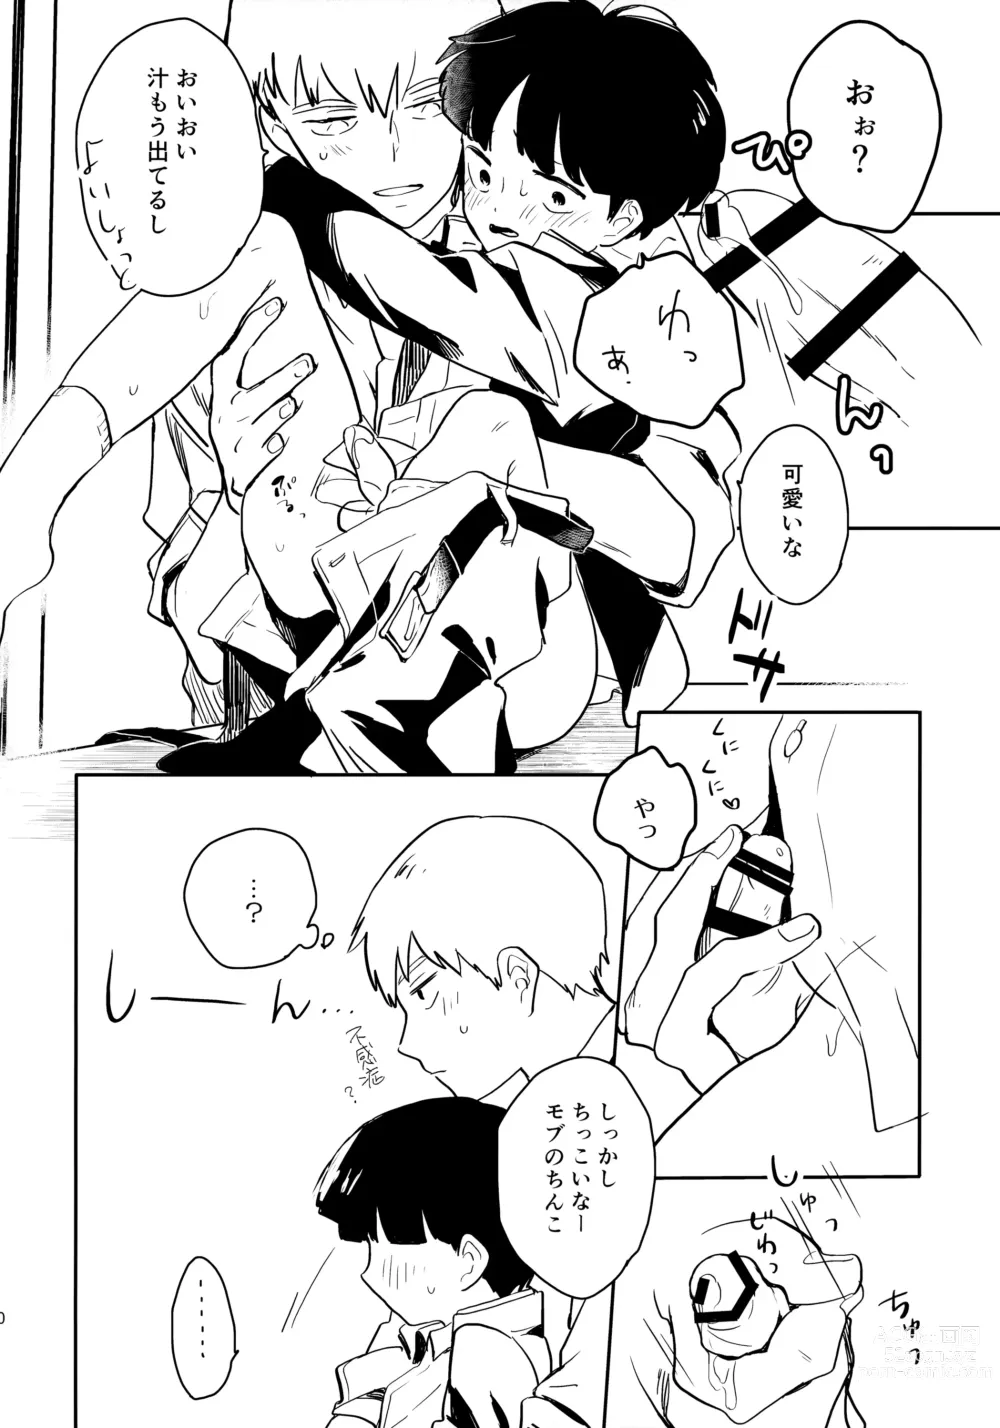 Page 11 of doujinshi Shitei Crash